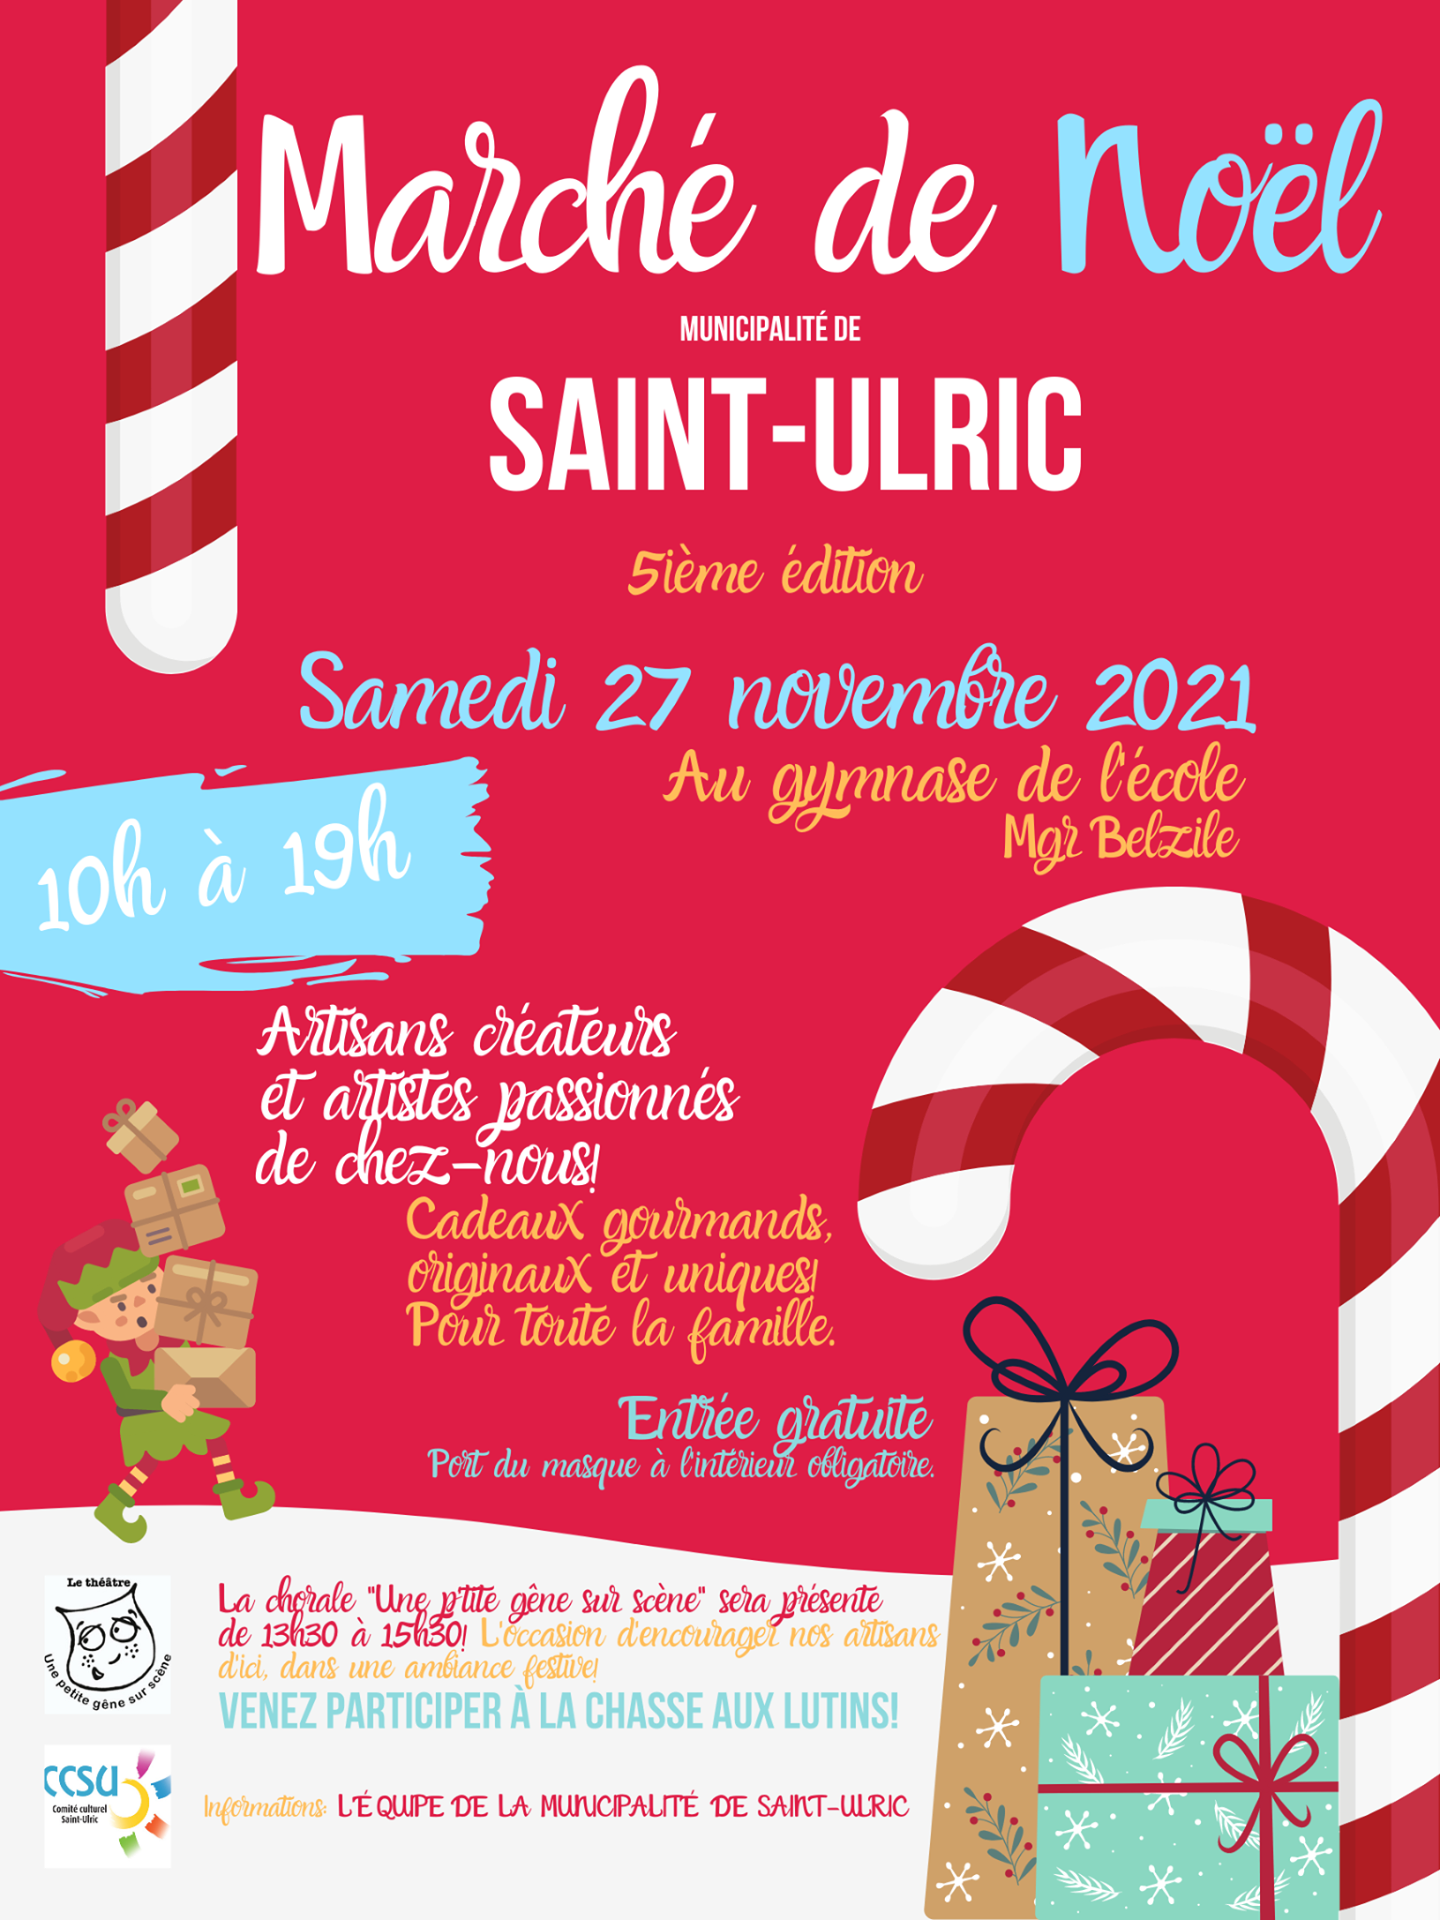 Marché de Noël de Saint-Ulric